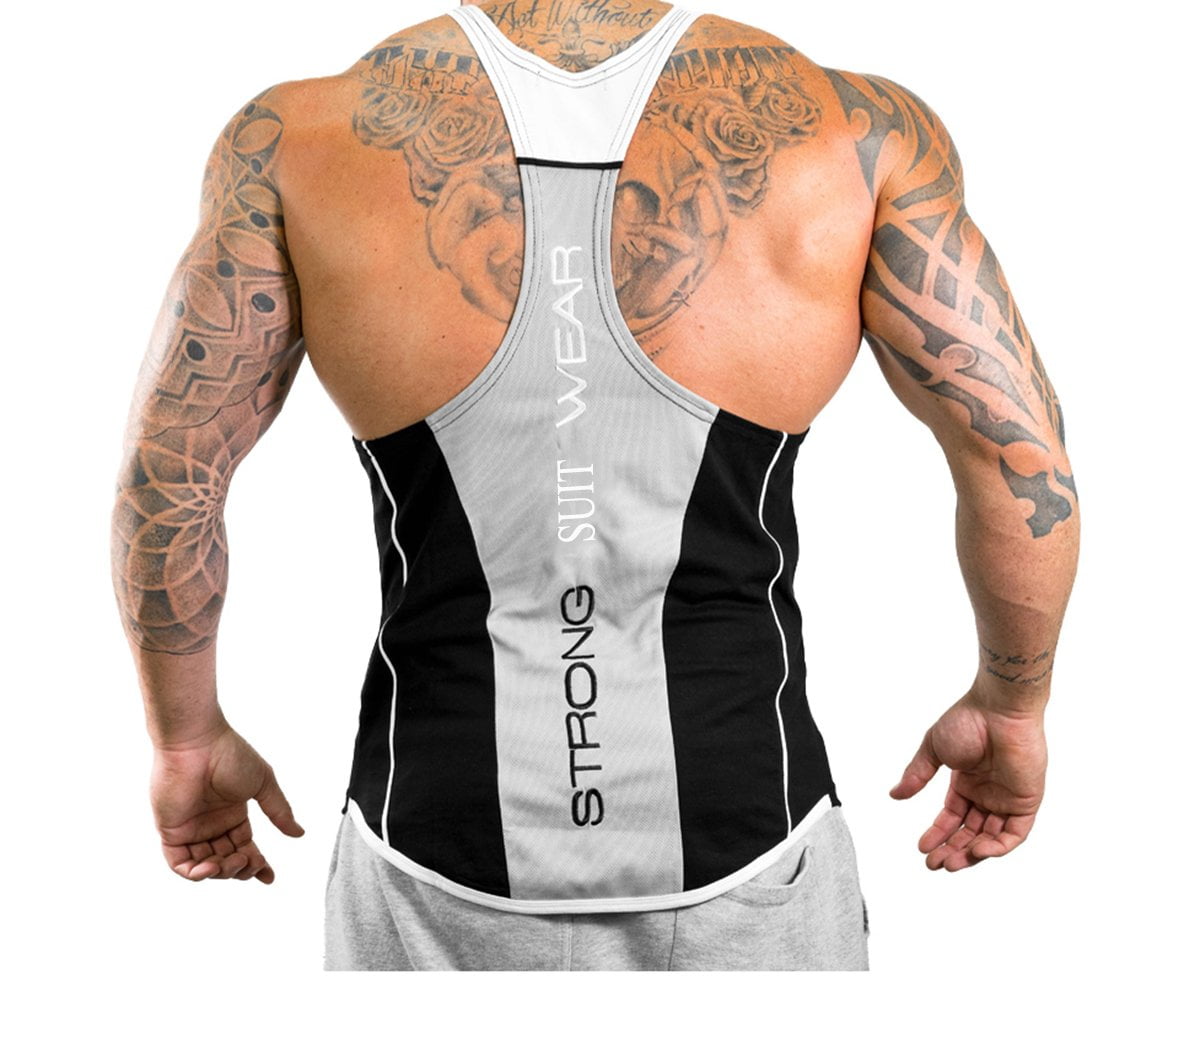 GuliriFei Men's Stringer Muscle Bodybuilding Shirt Tank Top,Black White ...